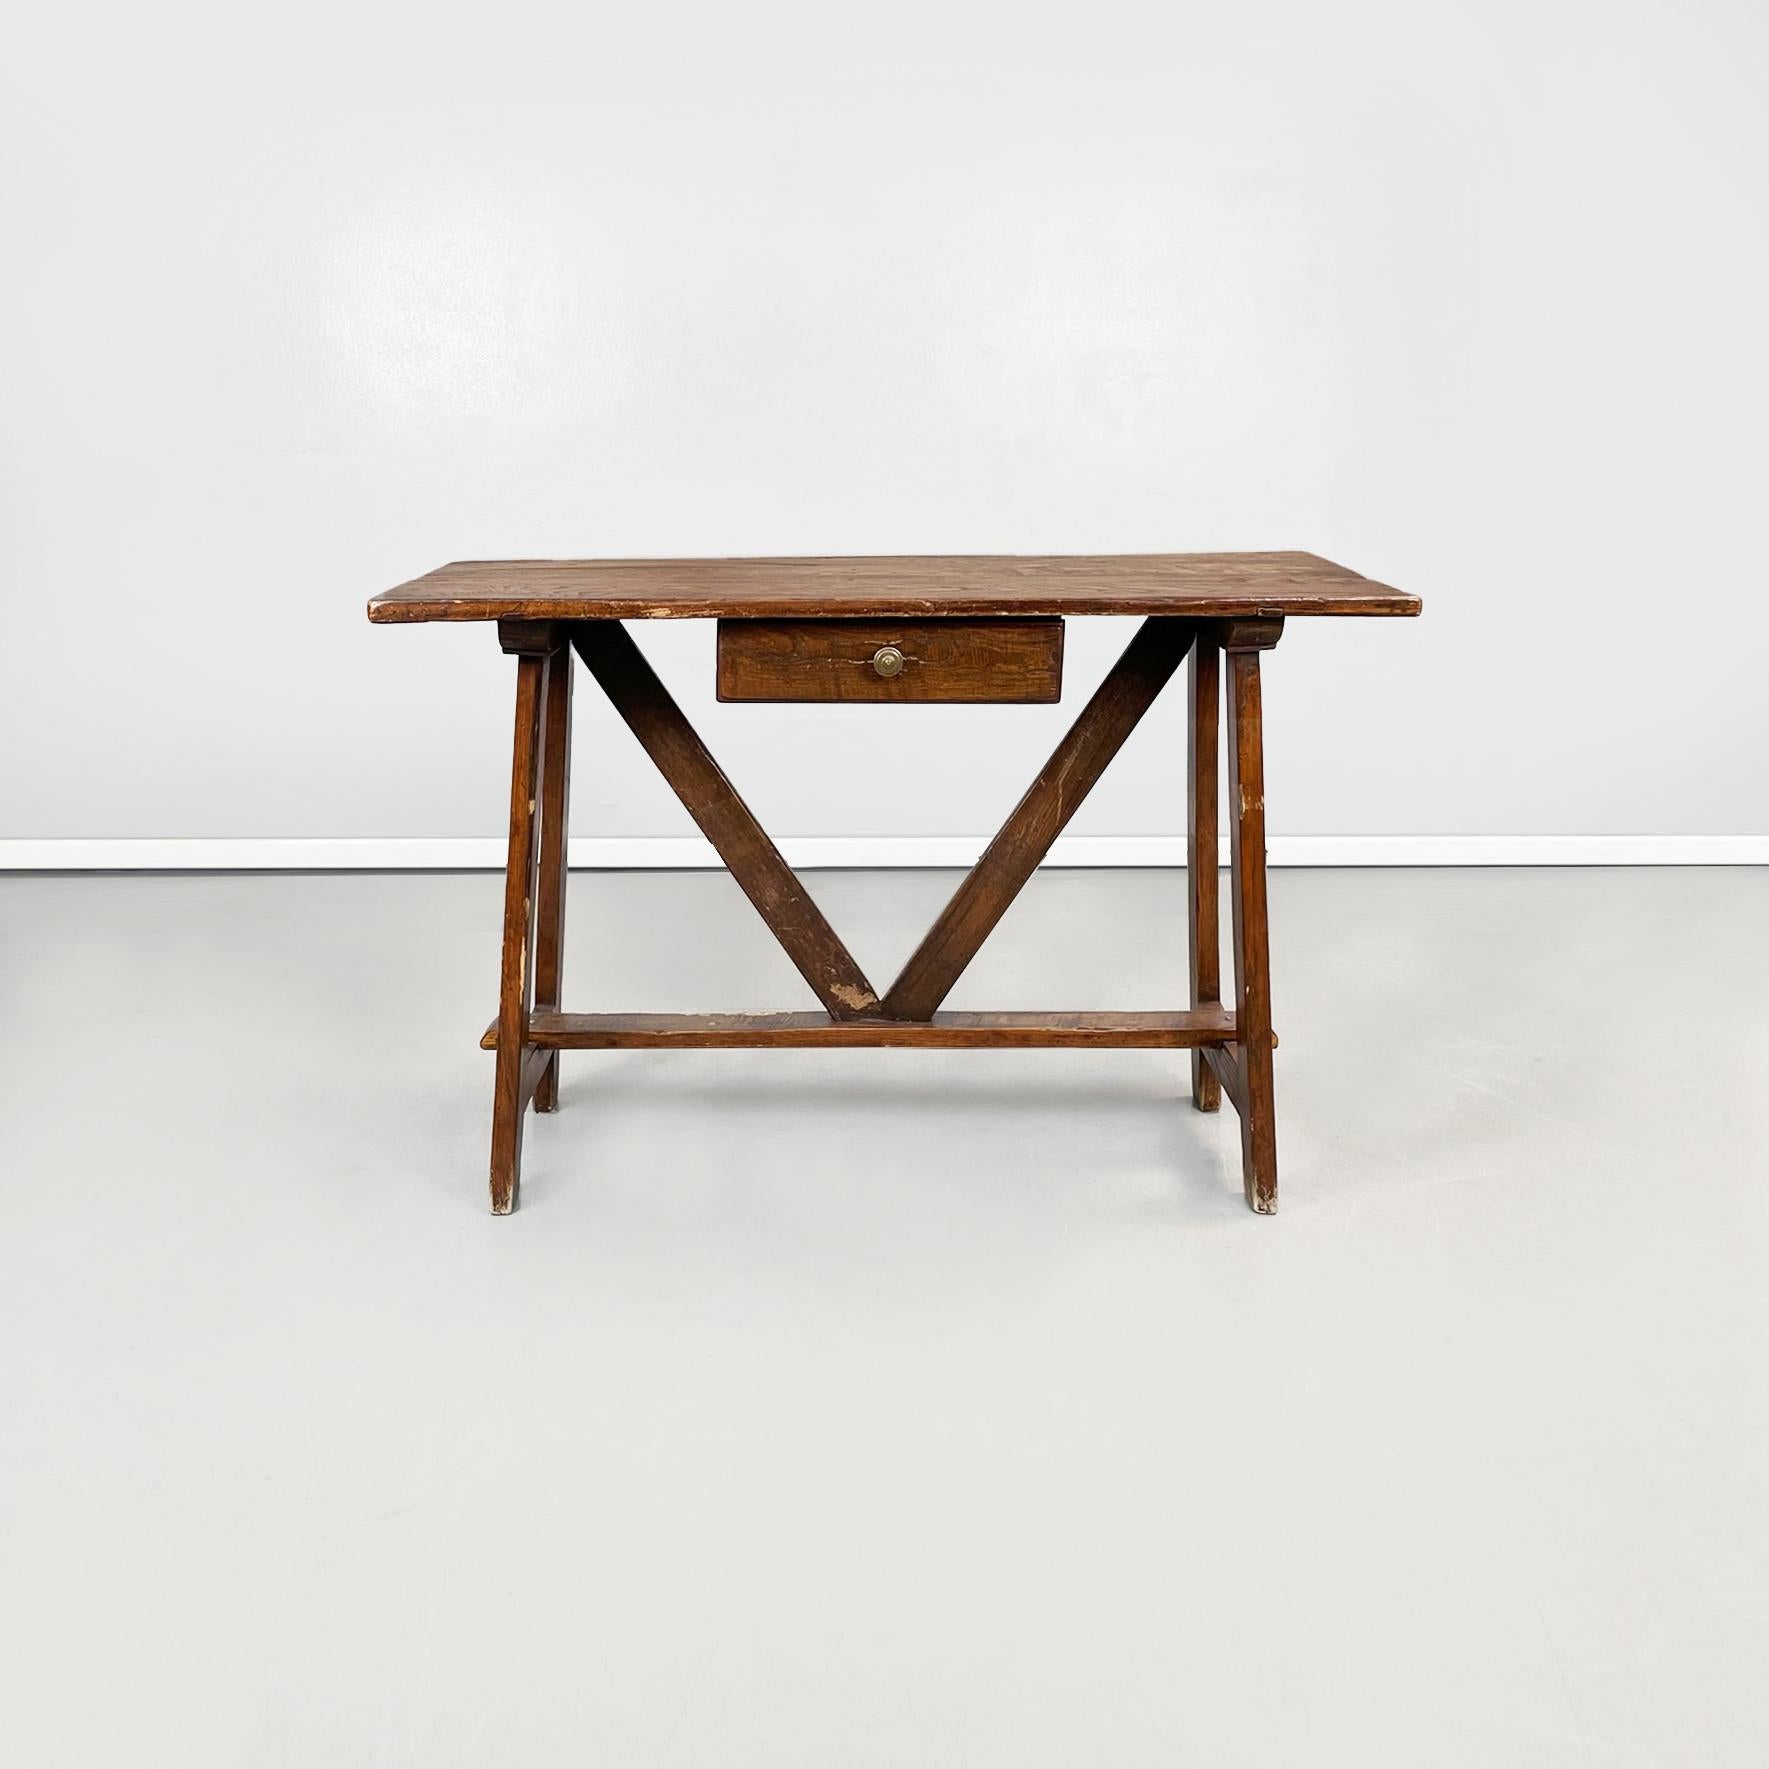 Table antique italienne fratino en bois avec un tiroir, années 1900
Table fratino rectangulaire en bois. La structure porteuse du sommet est constituée de plusieurs poutres en bois. Au centre, il y a un tiroir avec une poignée ronde en